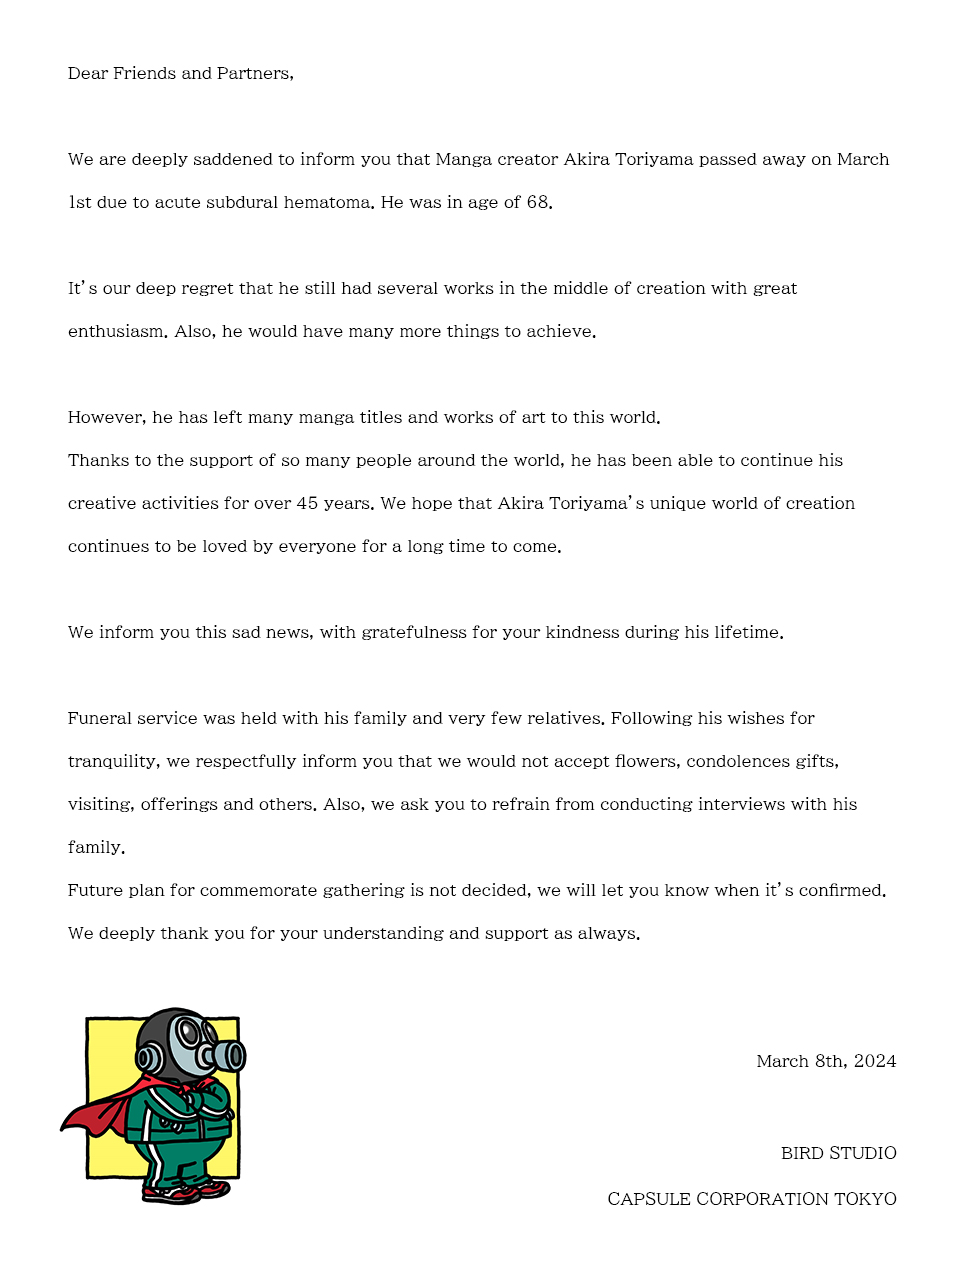 A mensagem da Bird Studio e da Capsule Corporation Tokyo anunciando o falecimento do criador de Dragon Ball, Akira Toriyama.